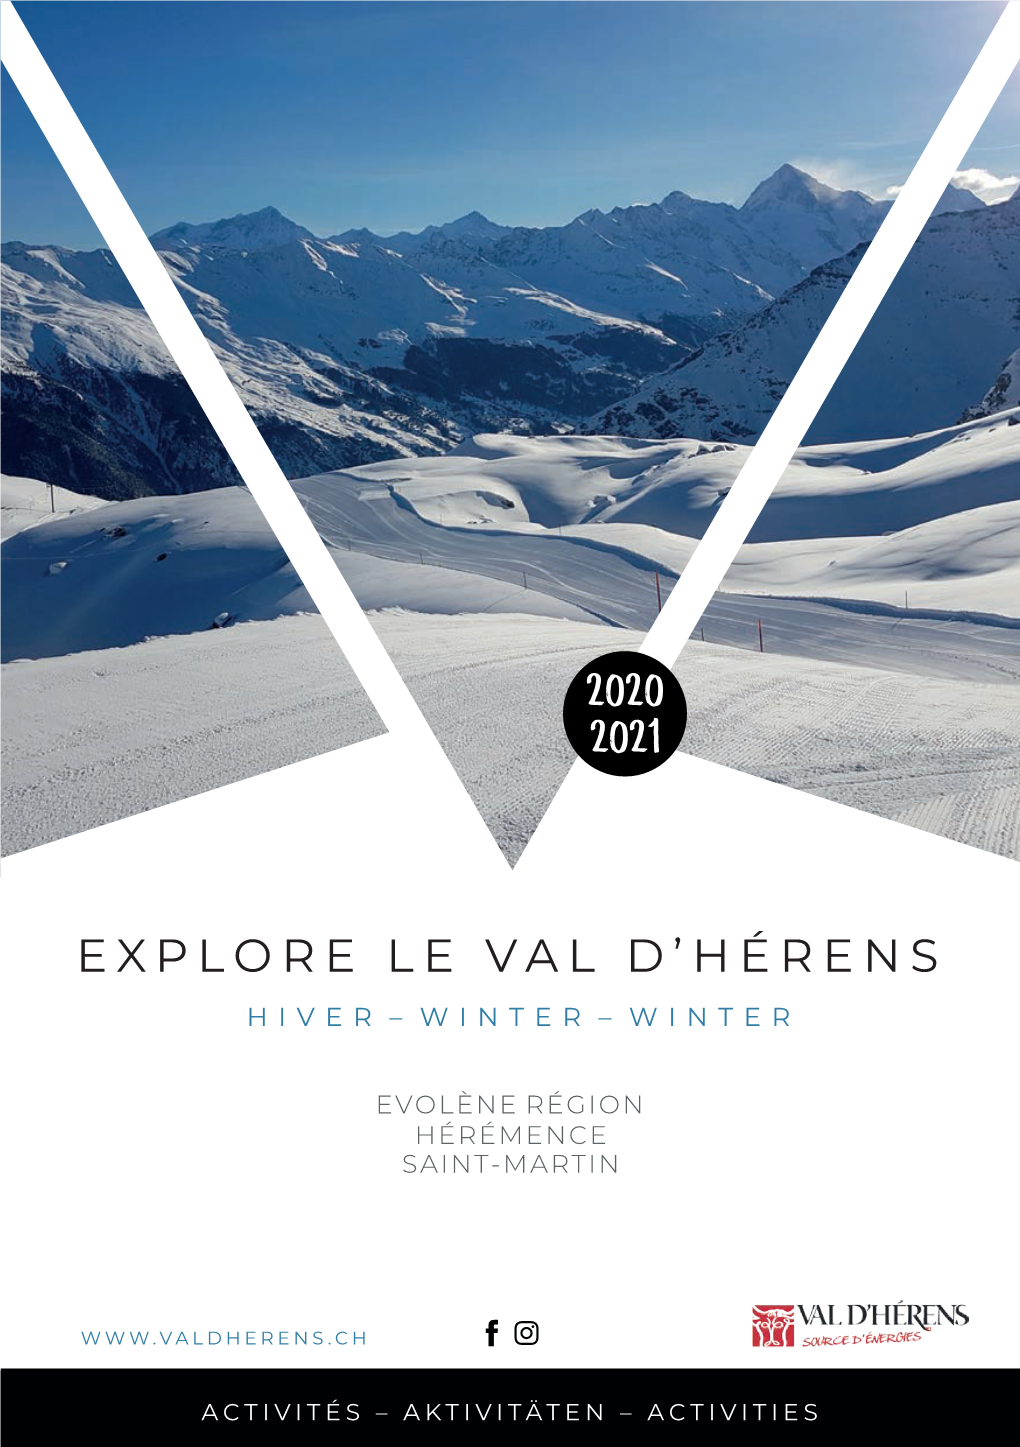 Explore Le Val D'hérens